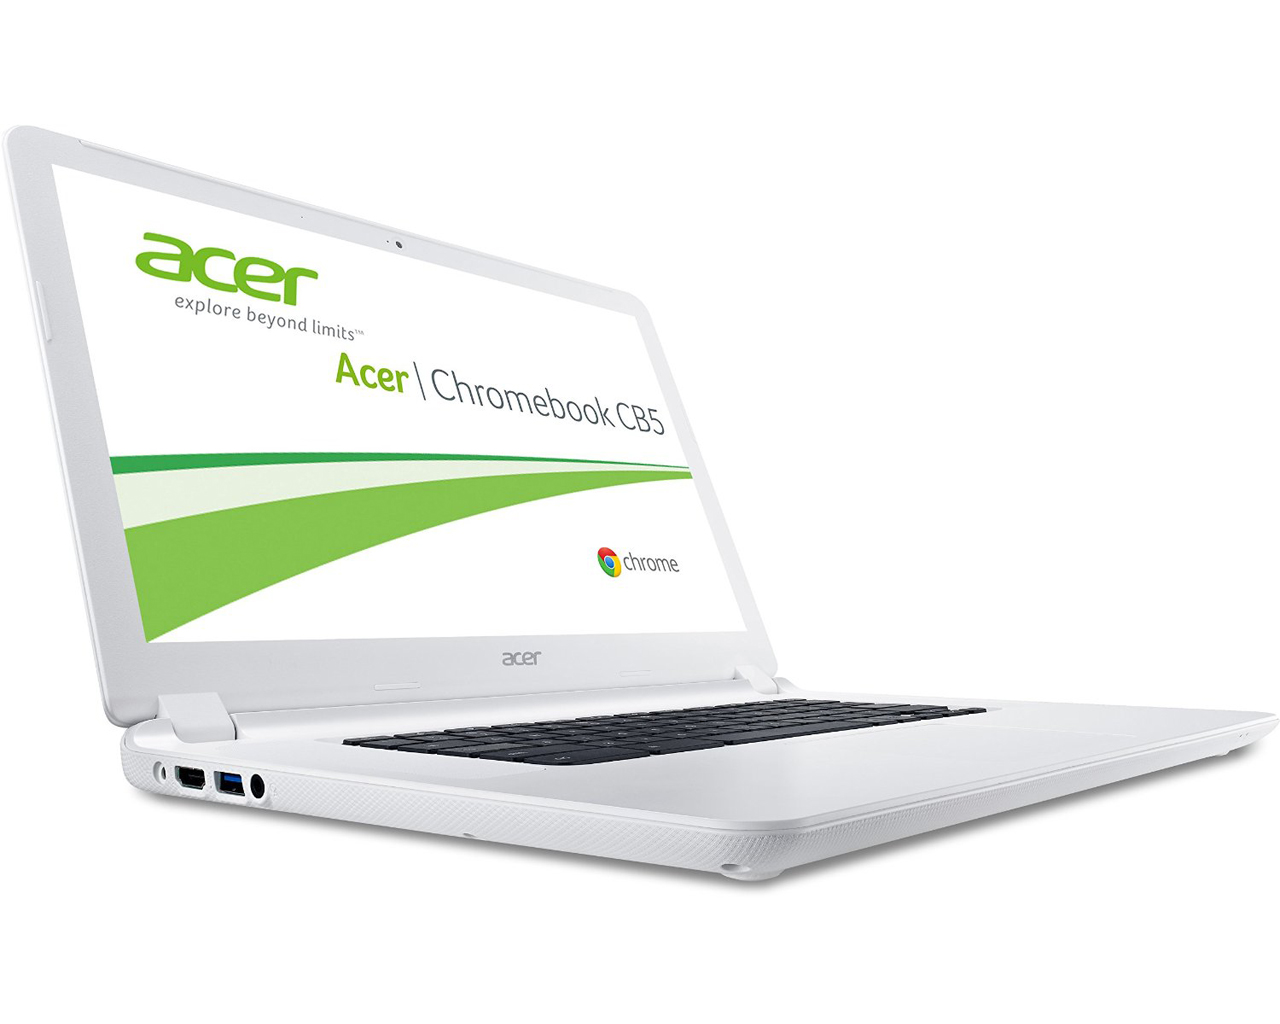 Acer Chromebook 15 Series - Notebookcheck.net External Reviews